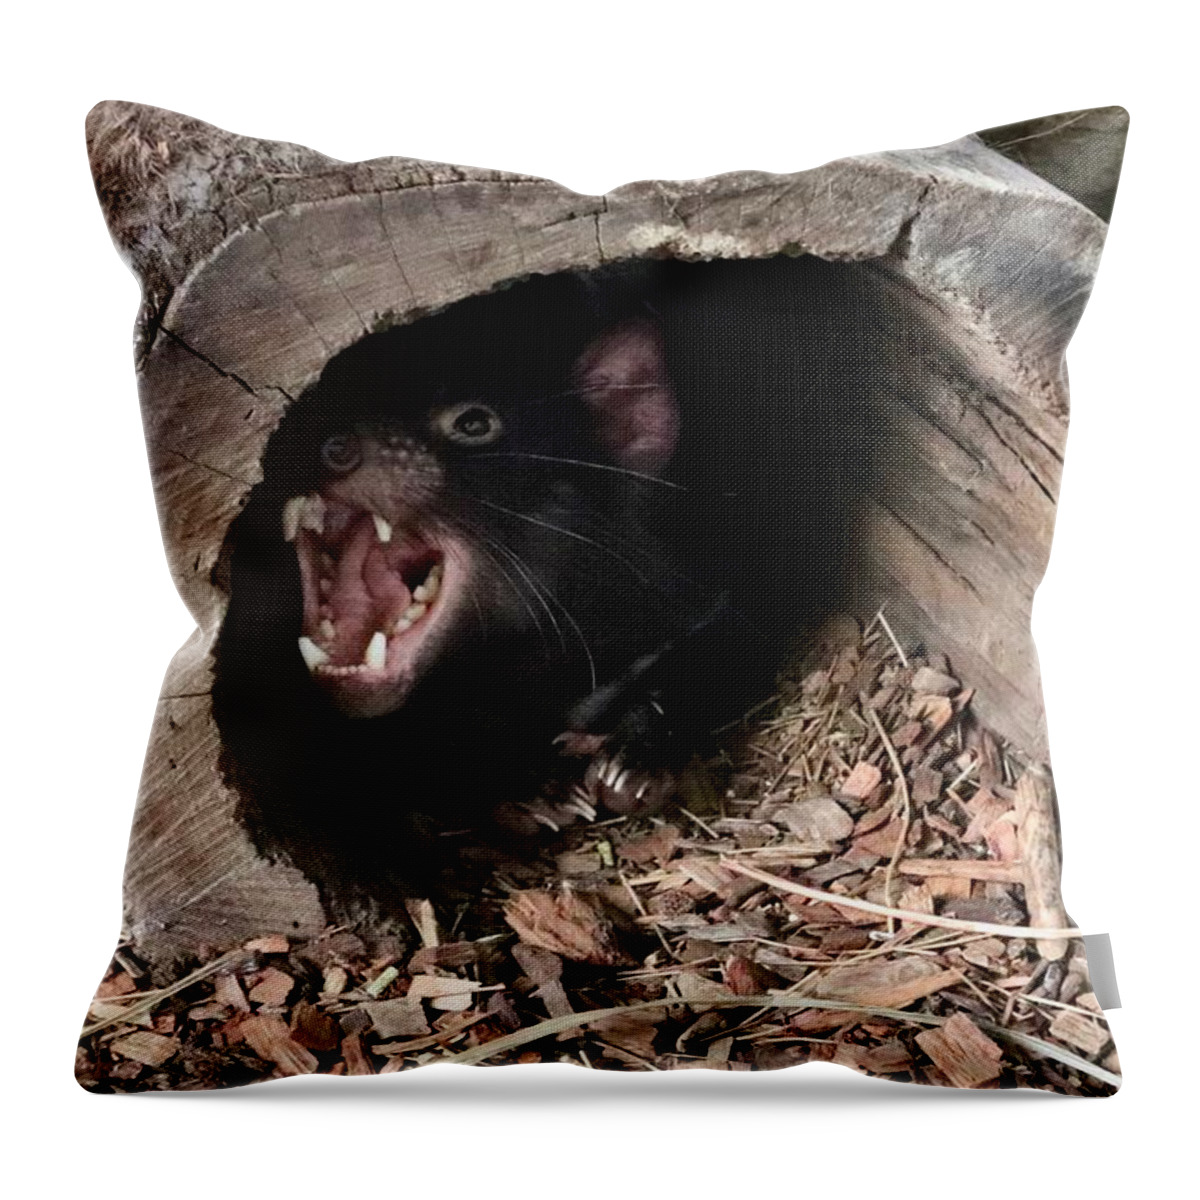 Tasmanian Throw Pillow featuring the photograph Tasmanian Devil #1 by Sarah Lilja